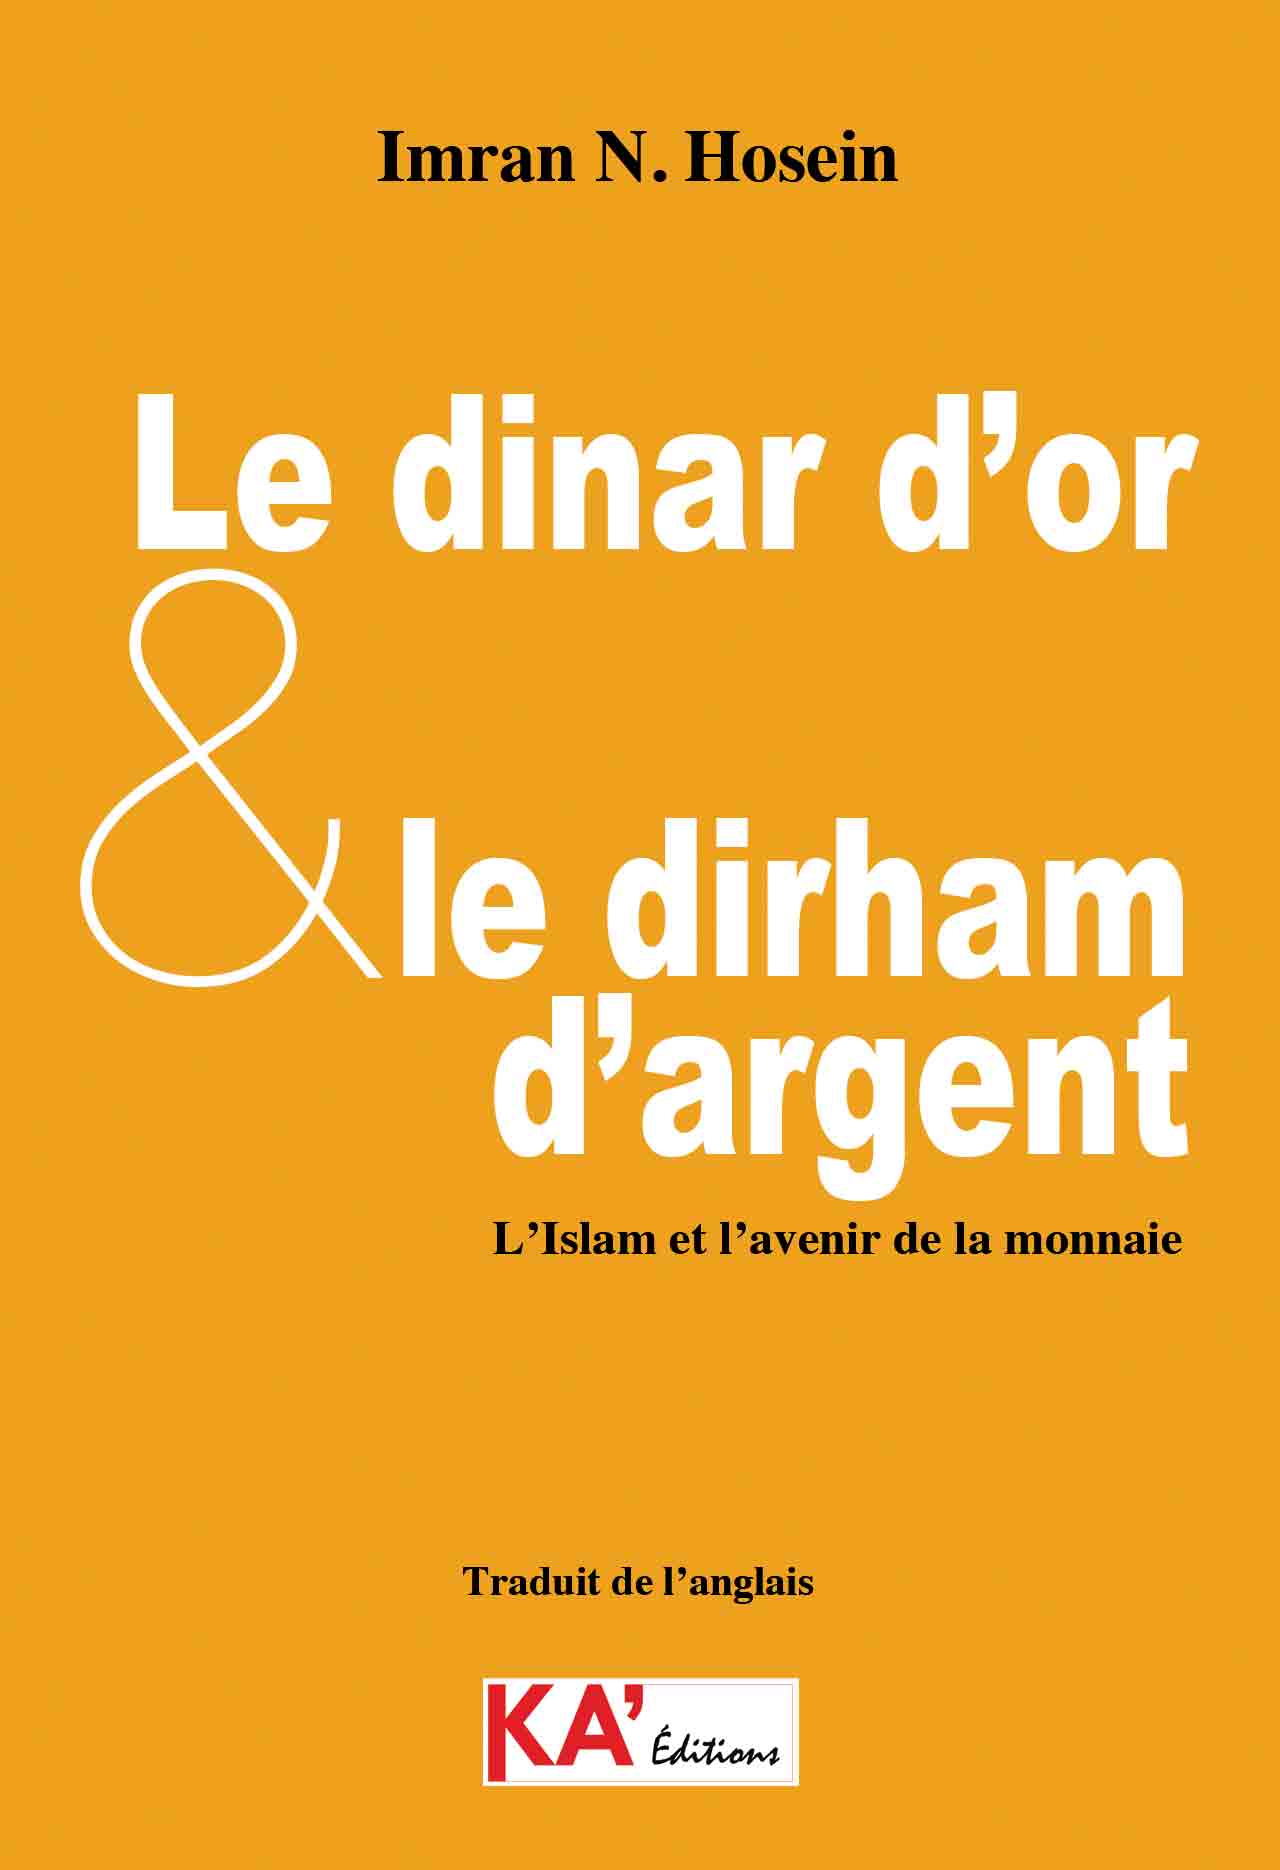 Couv-Le-dinar-d’or-et-dirham-argent-site